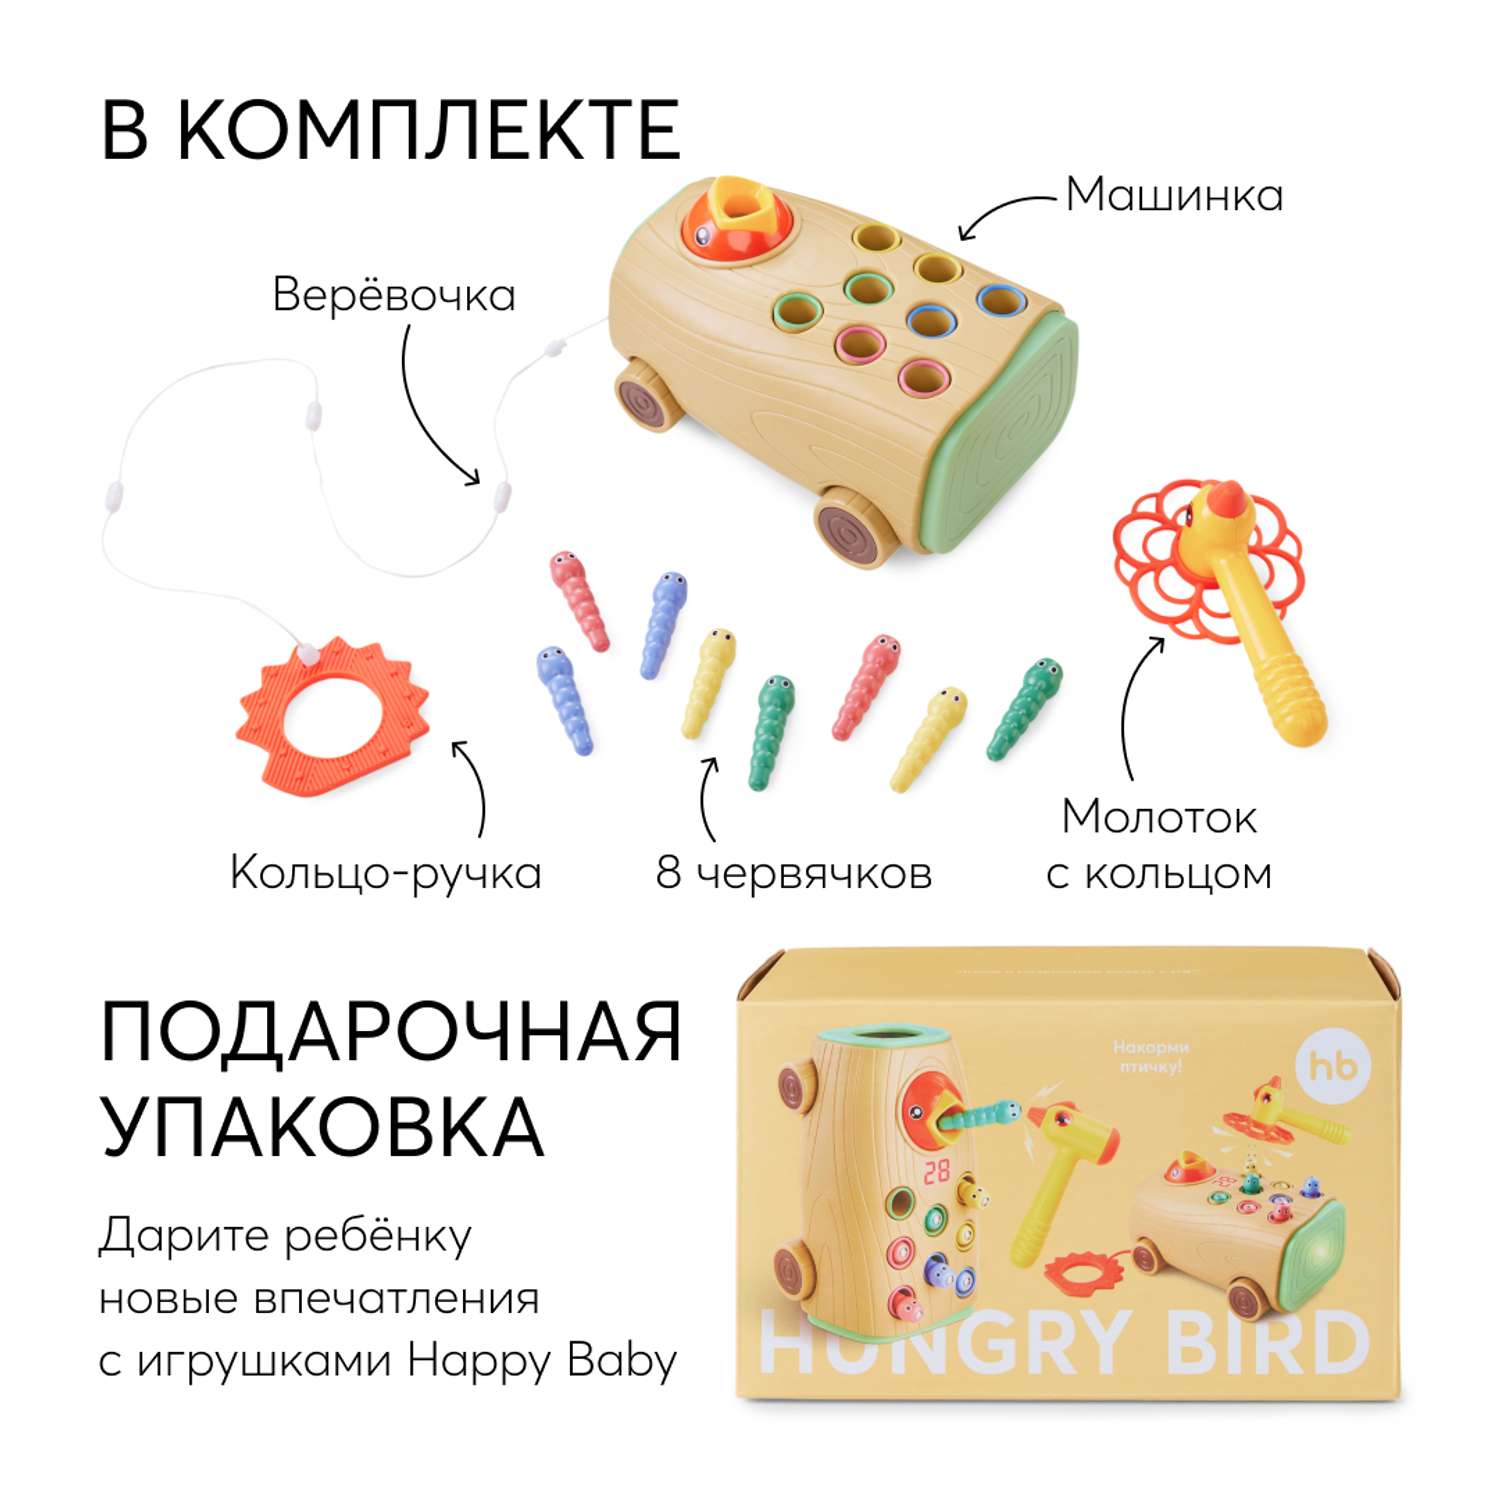 Интерактивная игрушка Happy Baby развивающая HUNGRY BIRD - фото 9